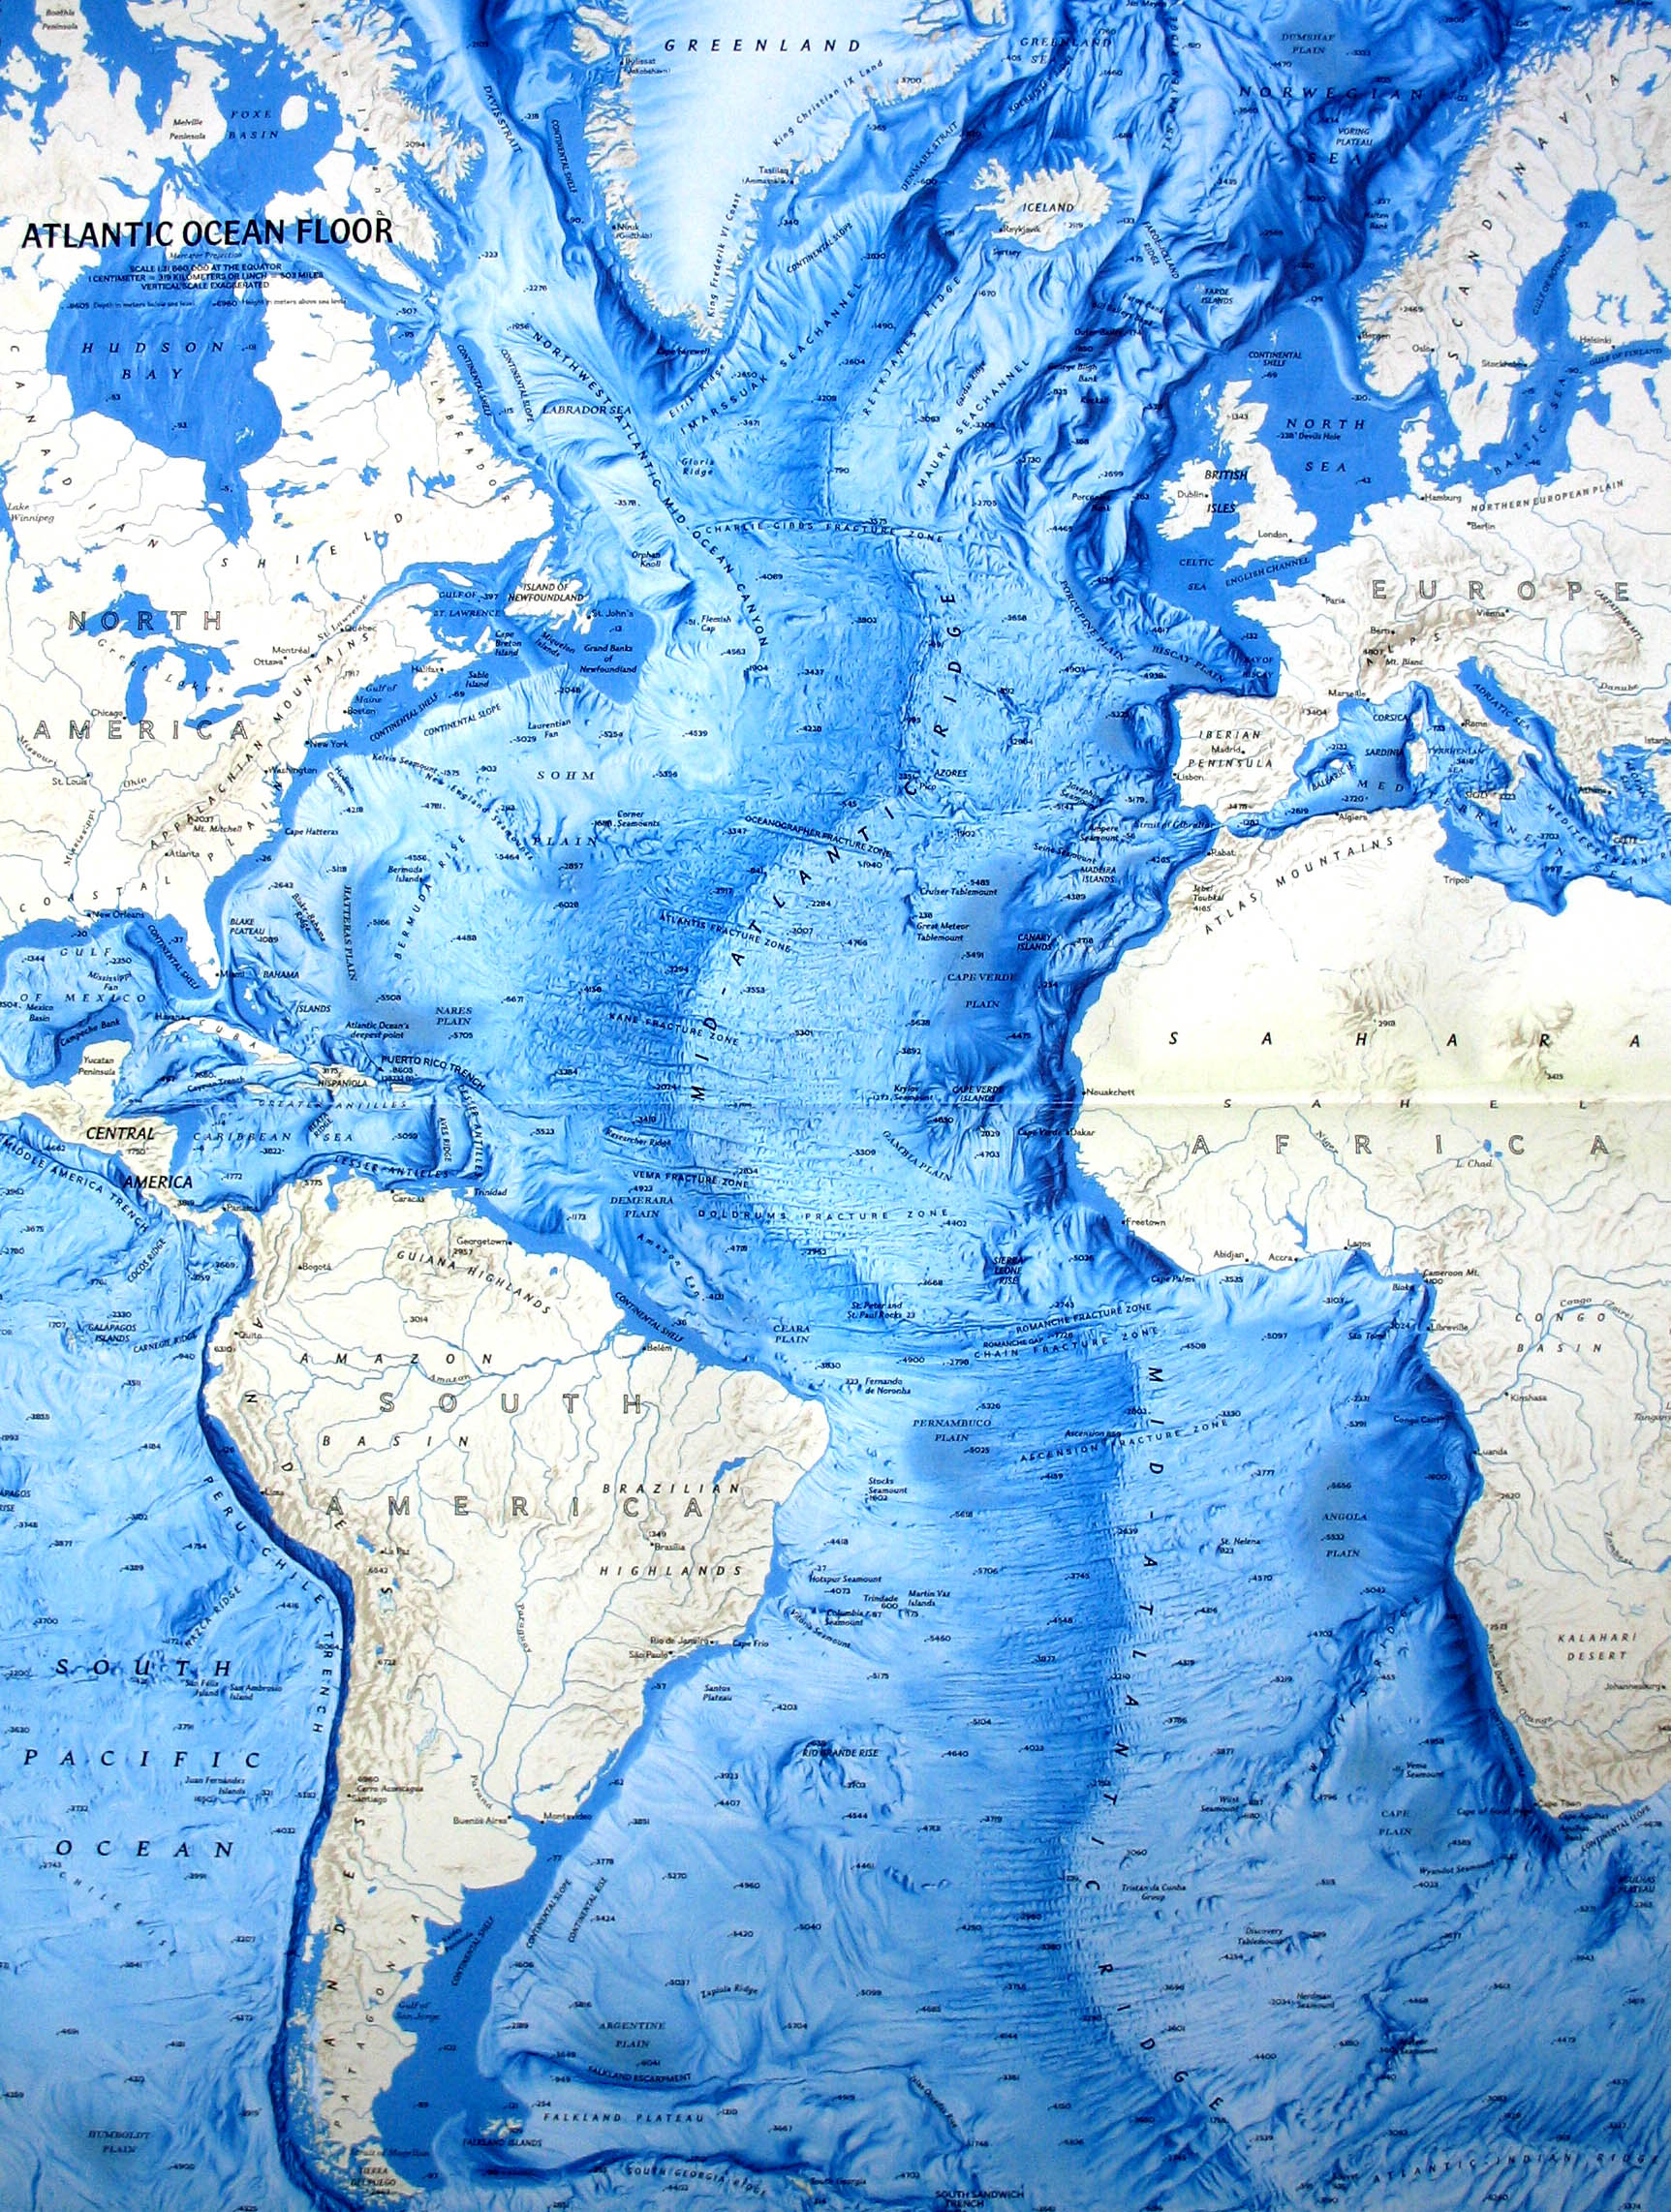 Atlantic Ocean Floor Map 